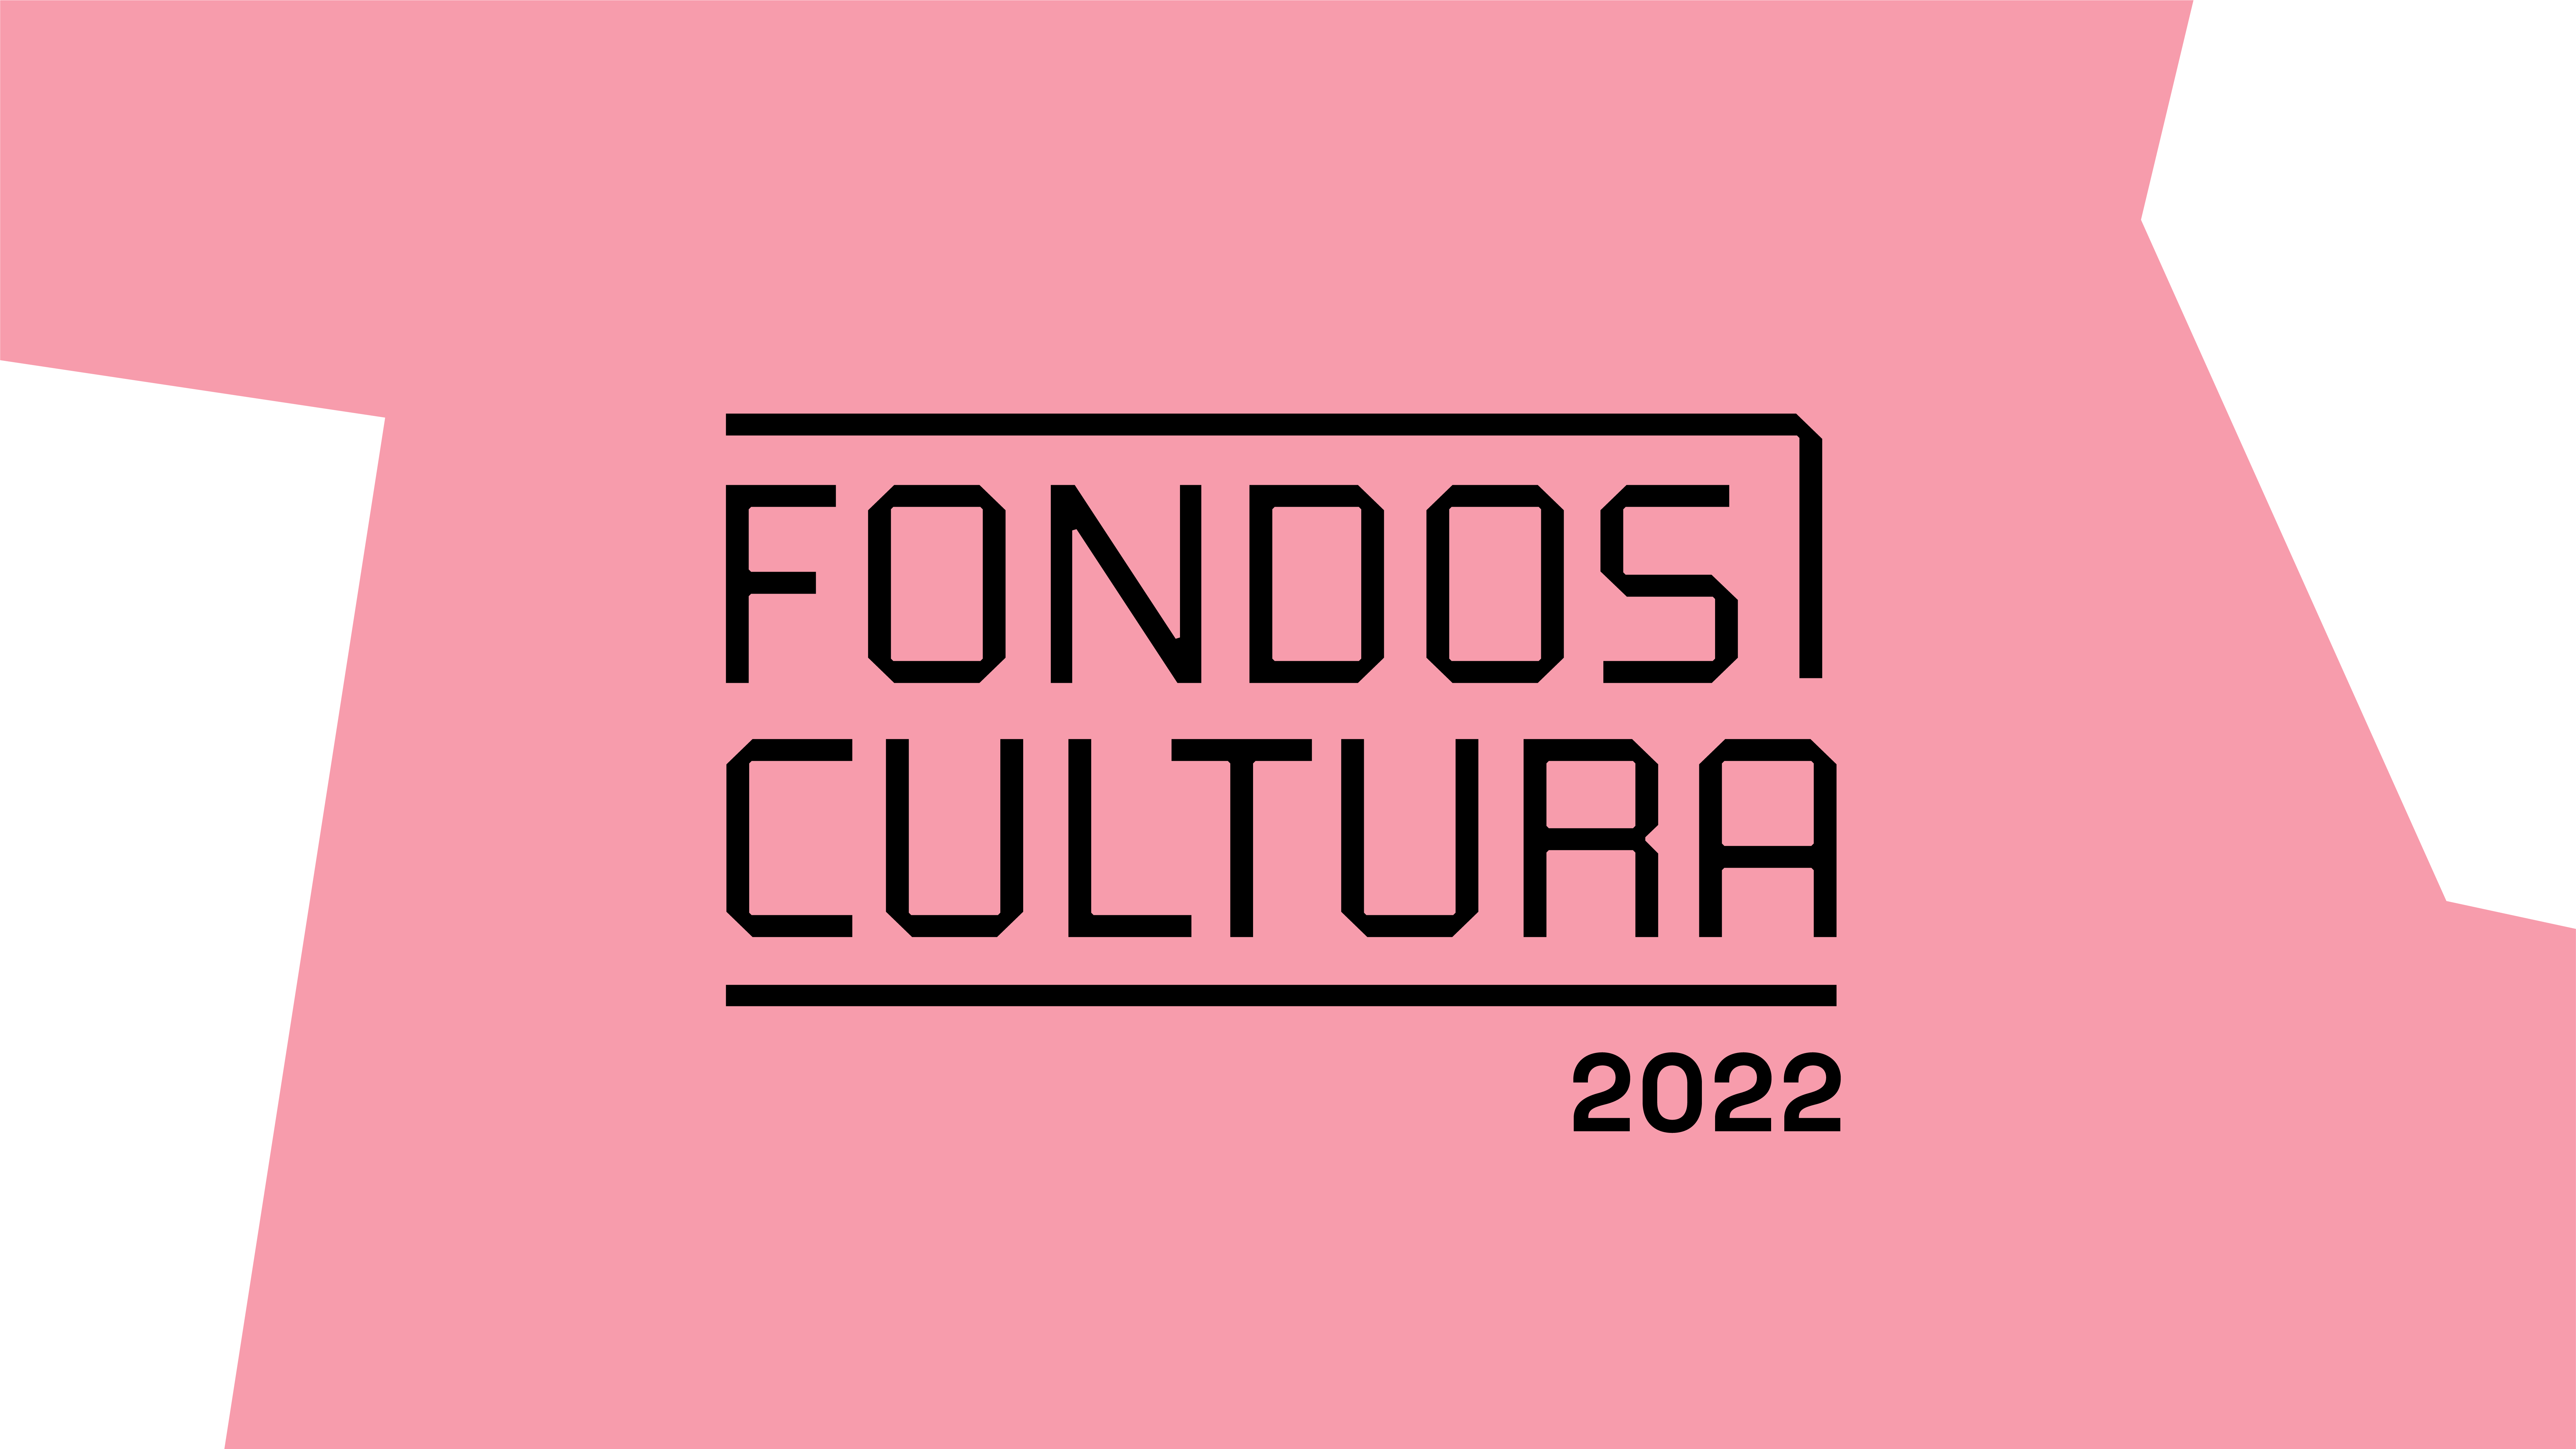 Fondos Cultura lanza convocatoria 2022 con histórica cifra de apoyo para la reactivación y recuperación del sector cultural